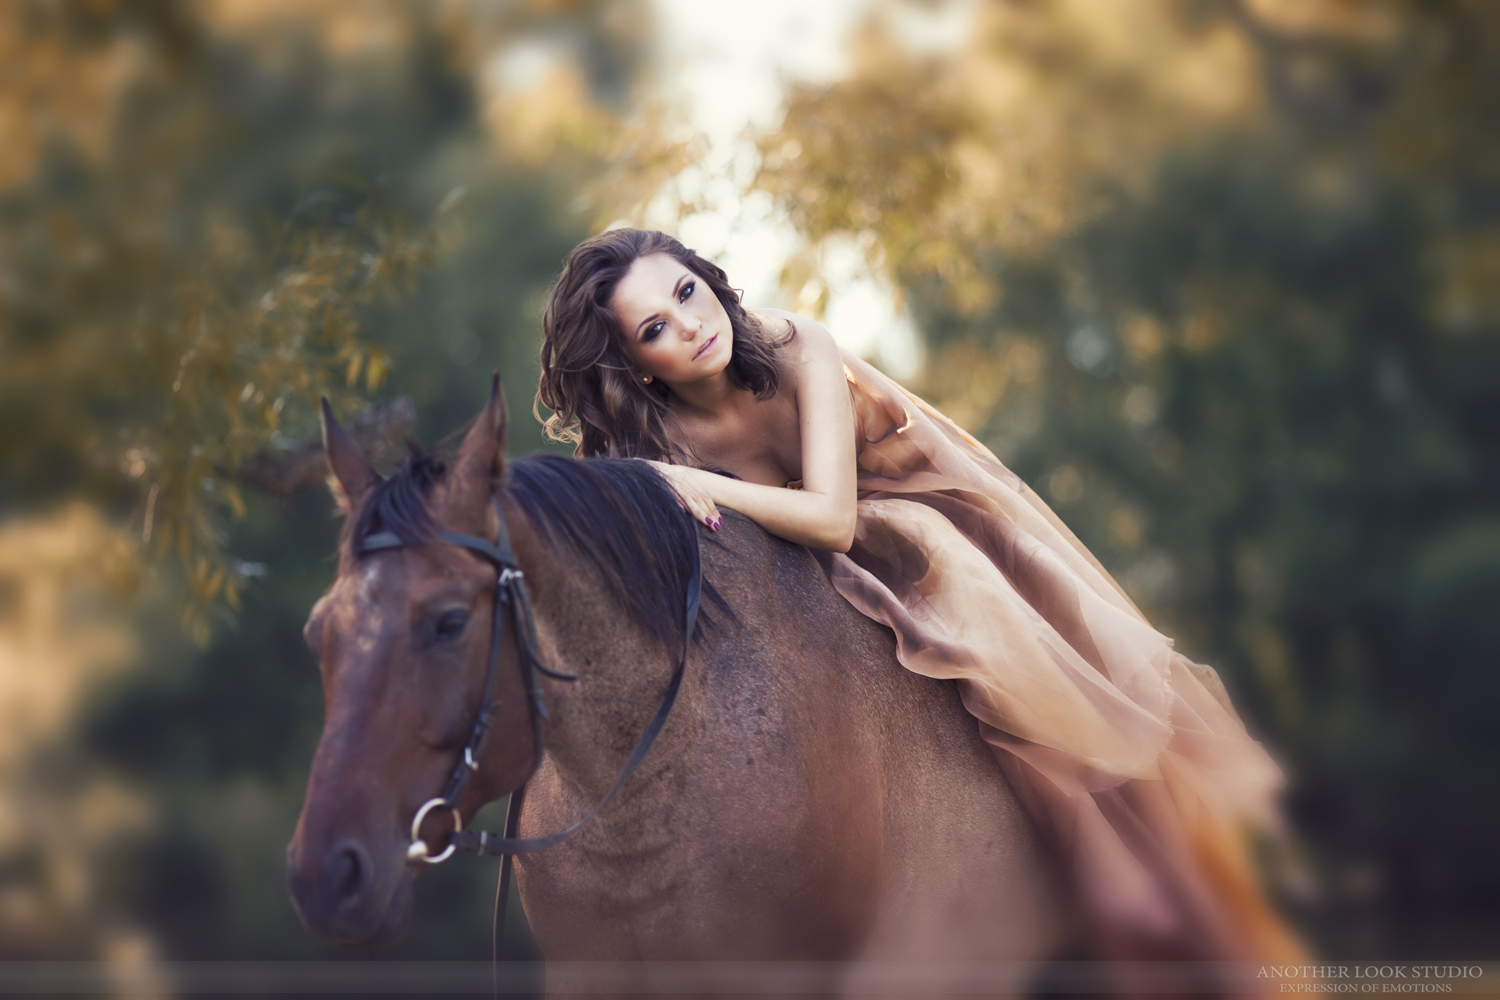 Фото Девушка сидит верхом на лошади, автор Another look studio